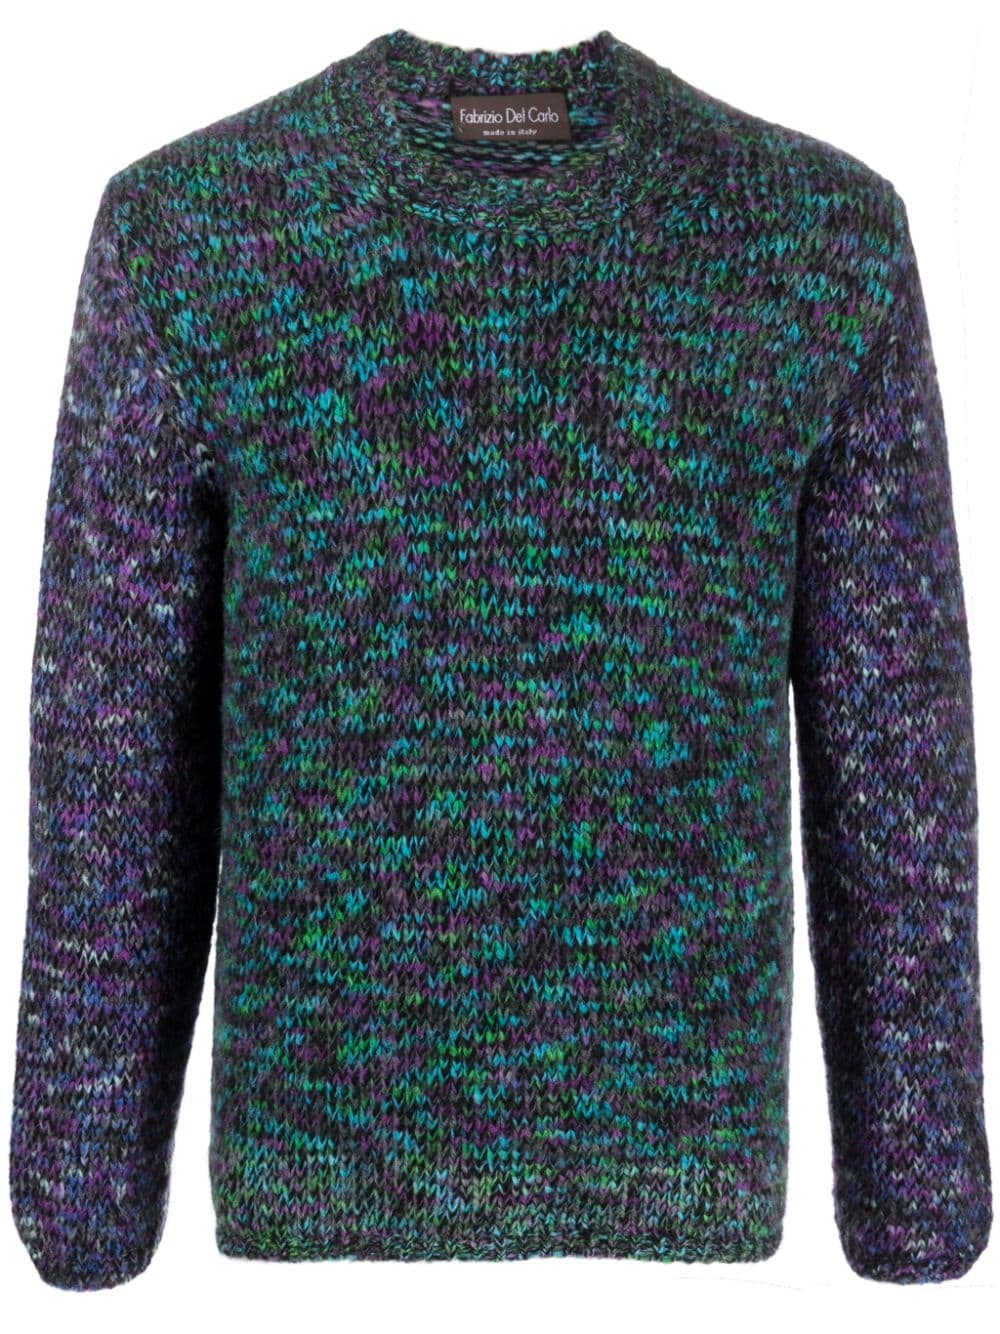 Shop Fabrizio Del Carlo Round Neck Sweater